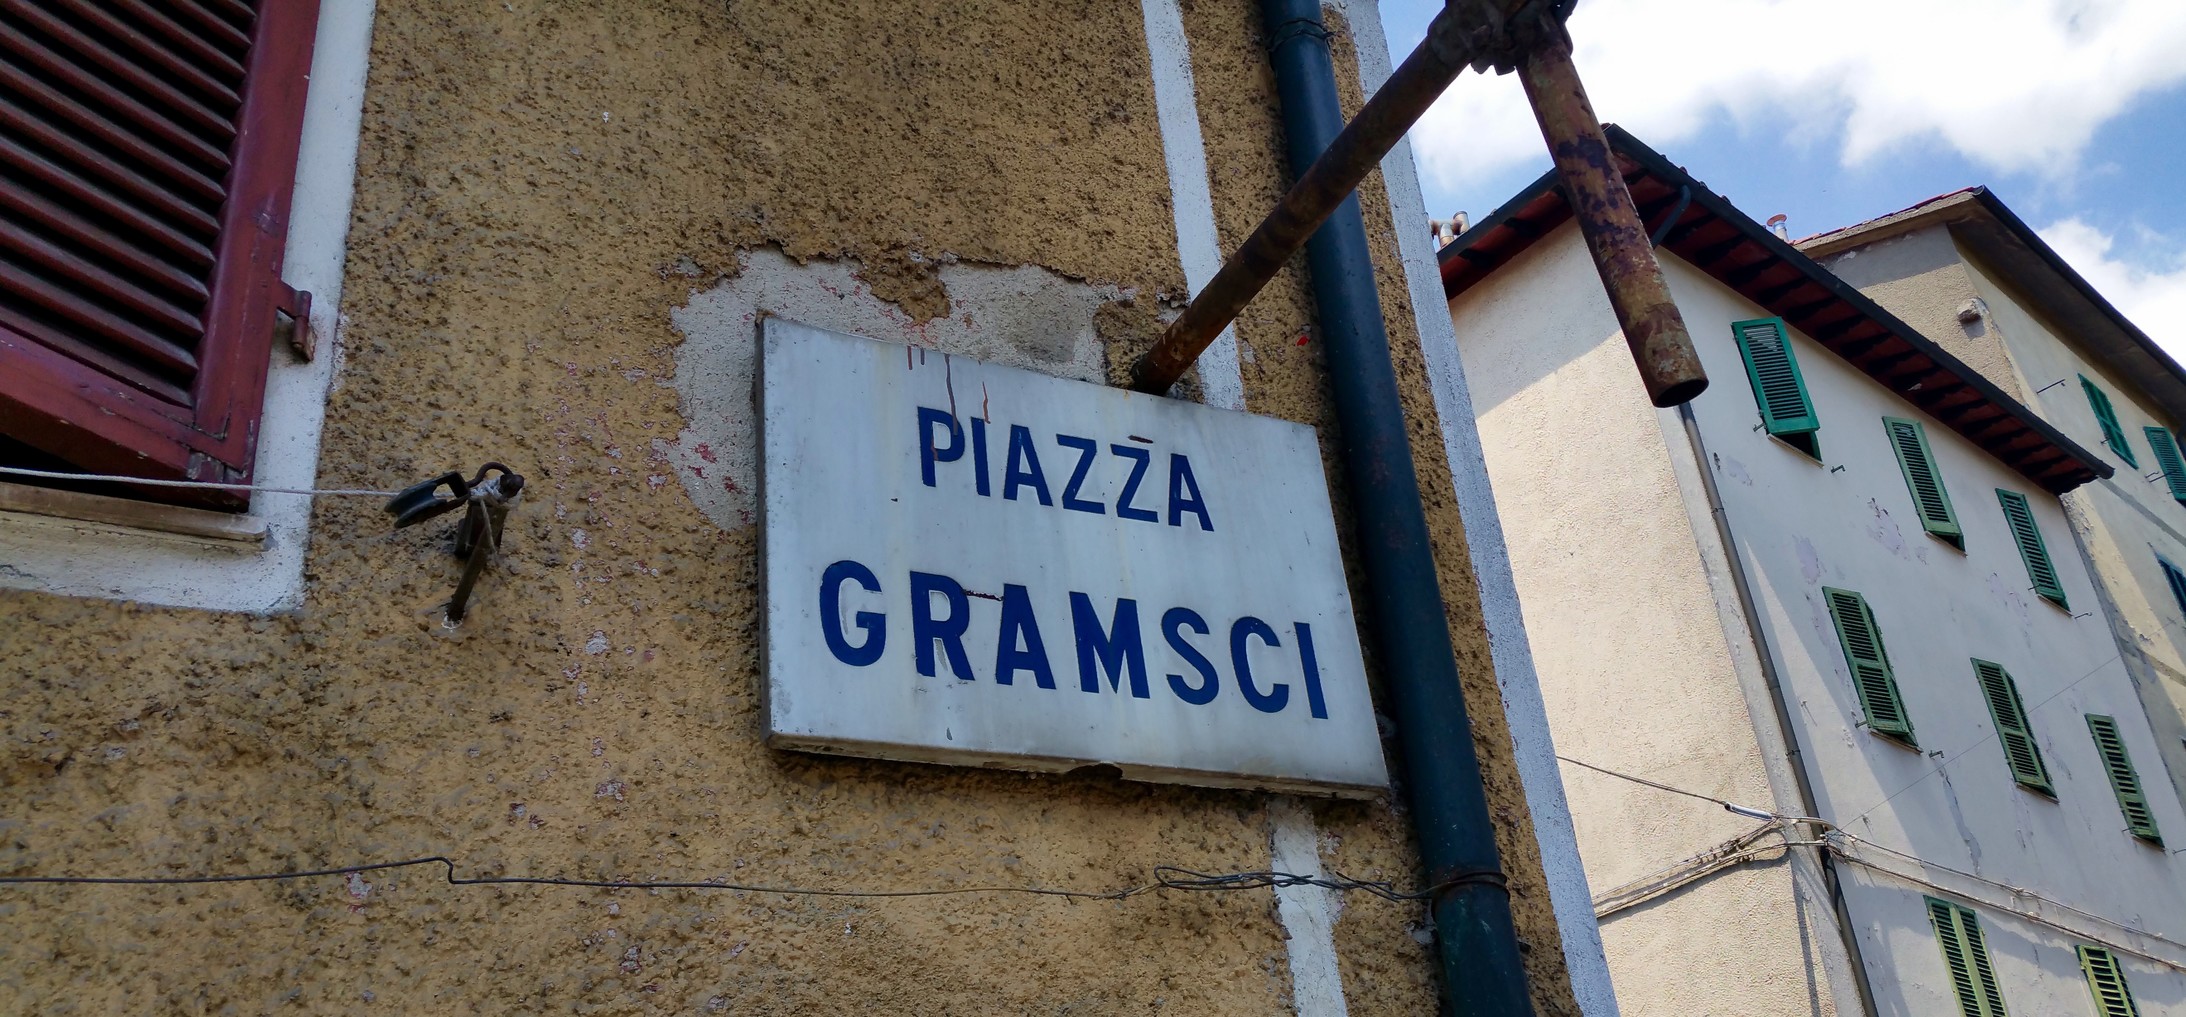 Die Piazza Gramsci im 7'000 Einwohner-Städtchen Abbadia San Salvatore, Toskana (Foto: J21)